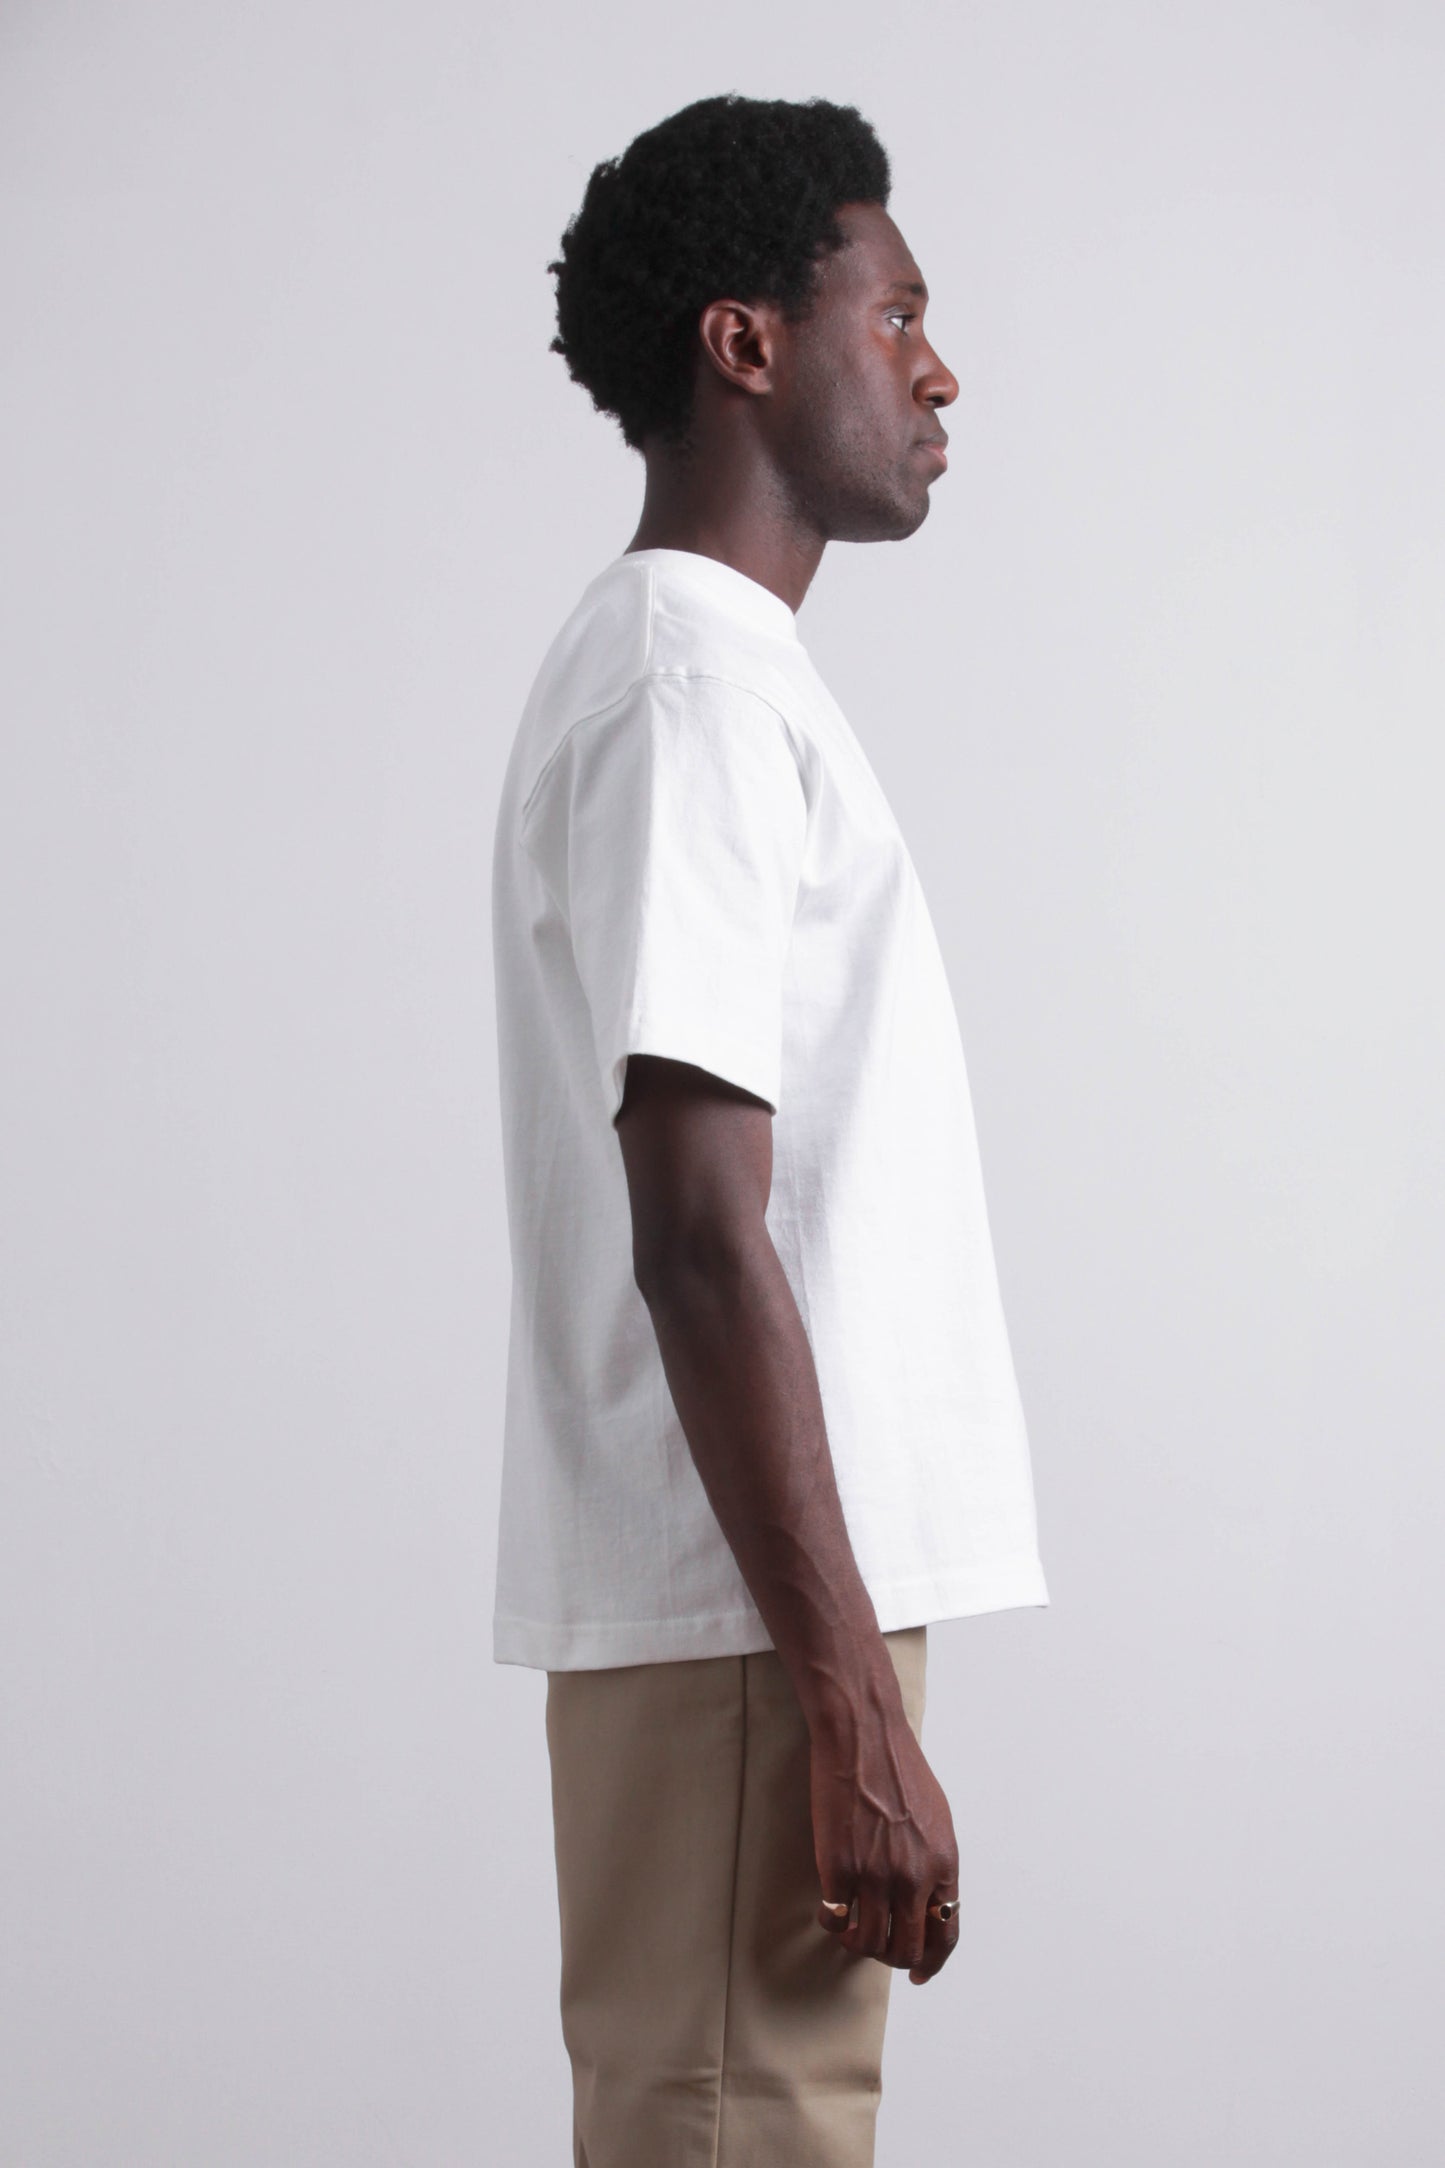 CAMBER USA - White T-shirt suuupply – Max-weight